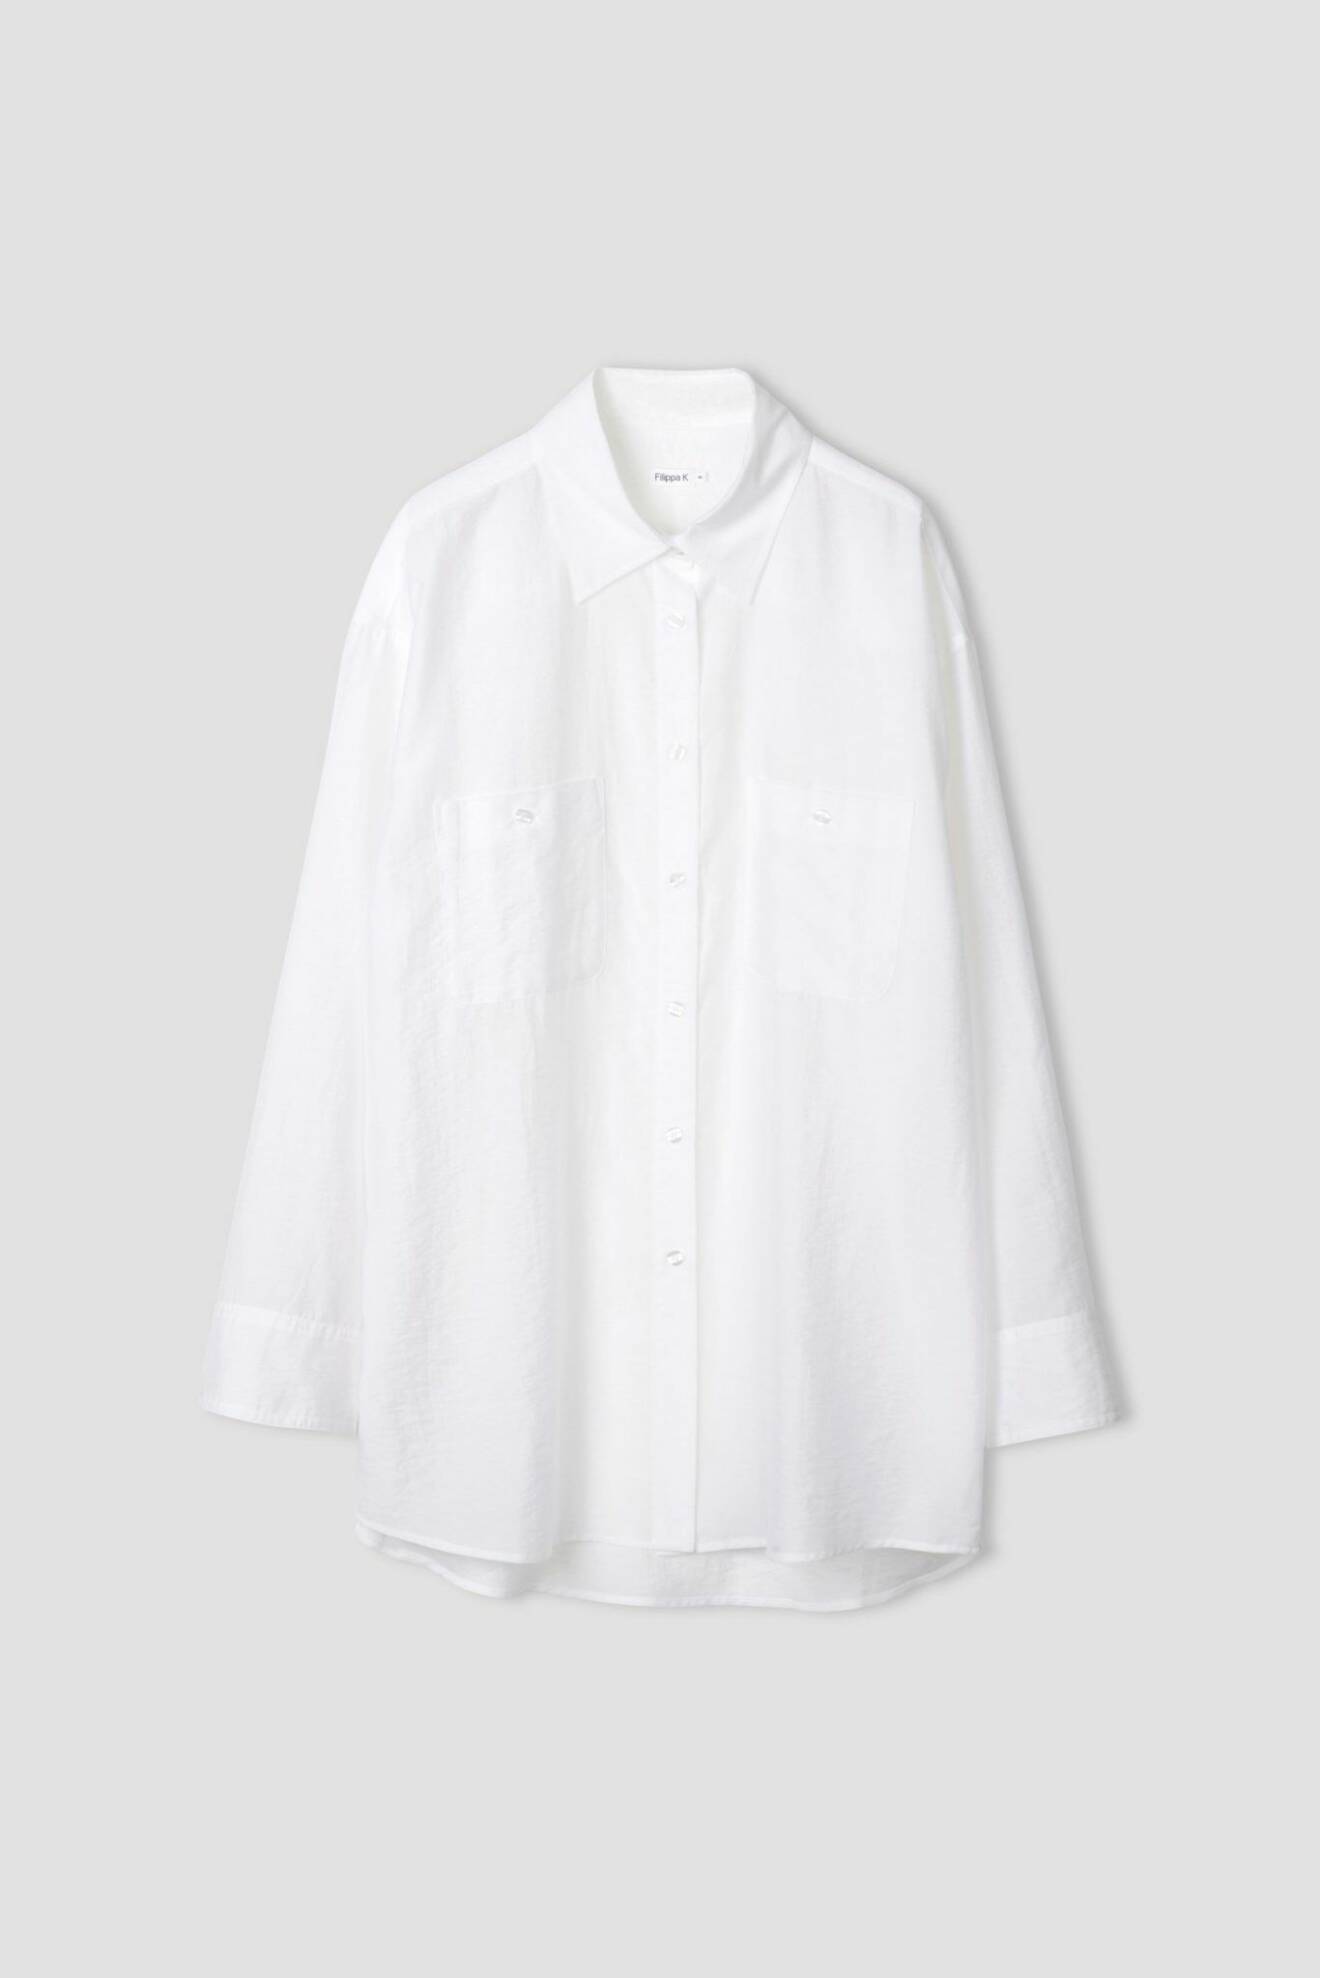 Den vita skjortan i längre modell är 100 % rätt alla dagar i veckan.